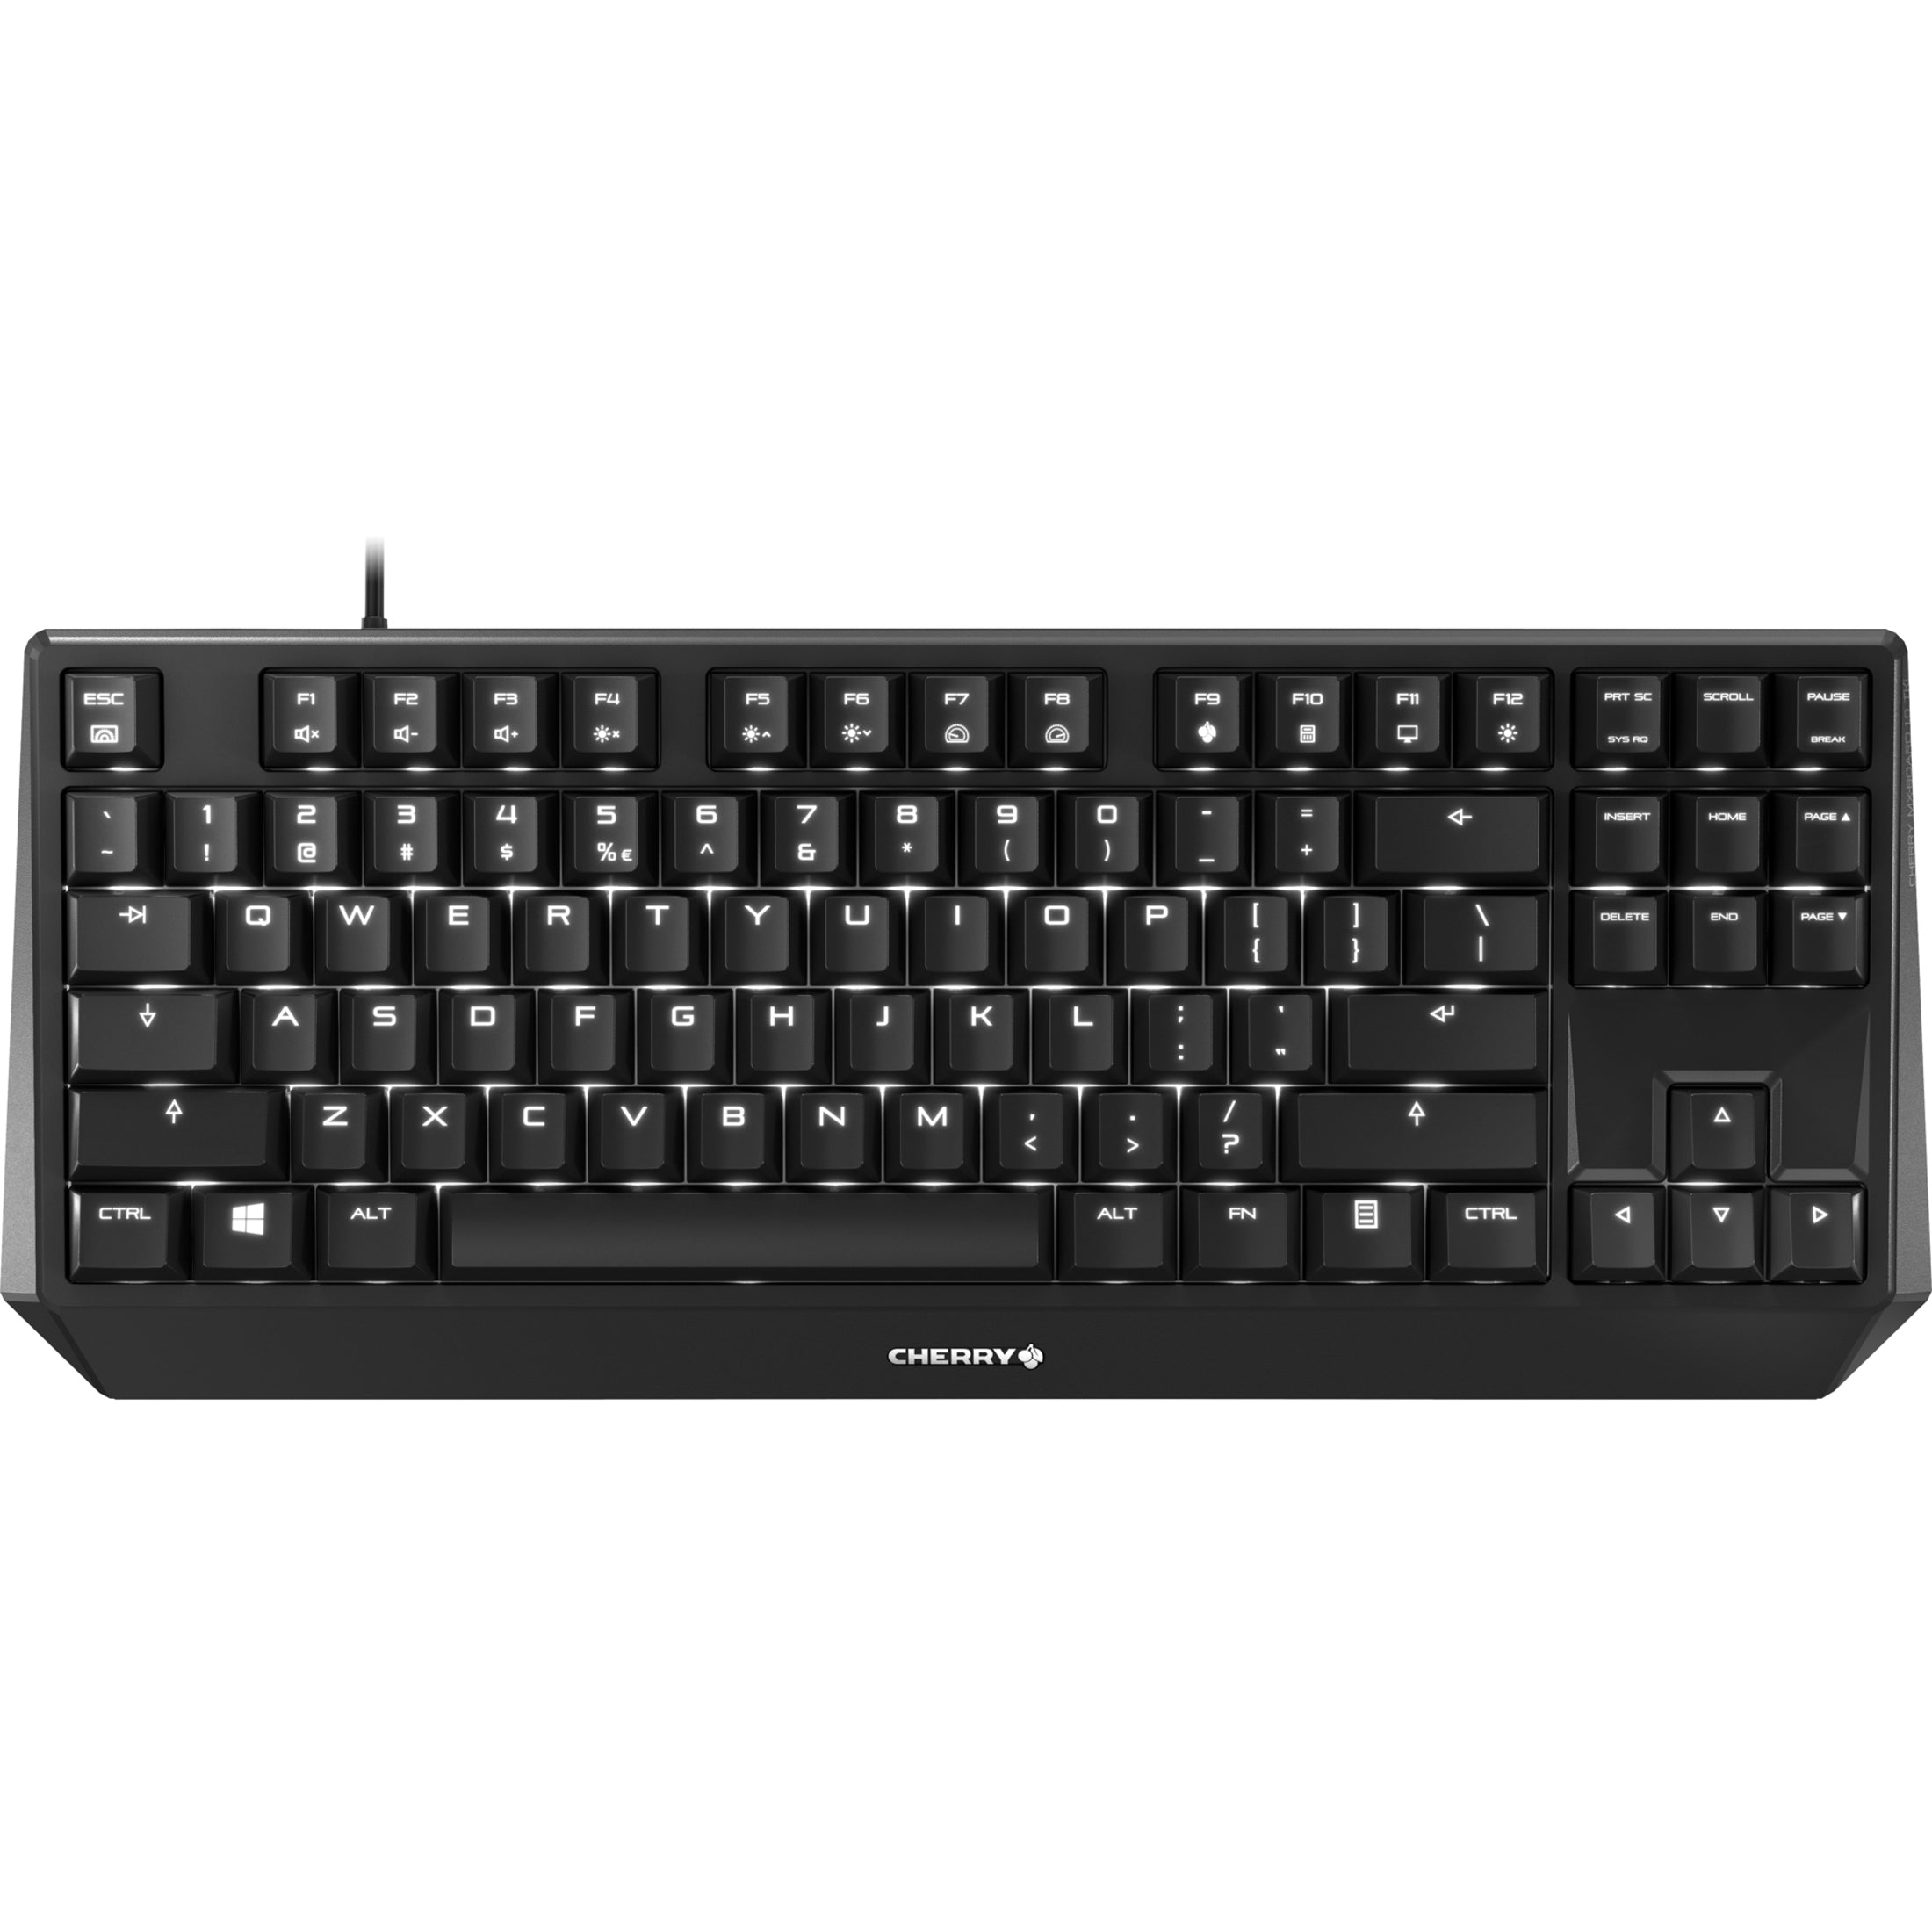 CHERRY G80-3811LYAEU-2 MX BOARD 1.0 Keybaord, TKL Wired Mechanical Keyboard, RGB LED Backlight, 87 Keys